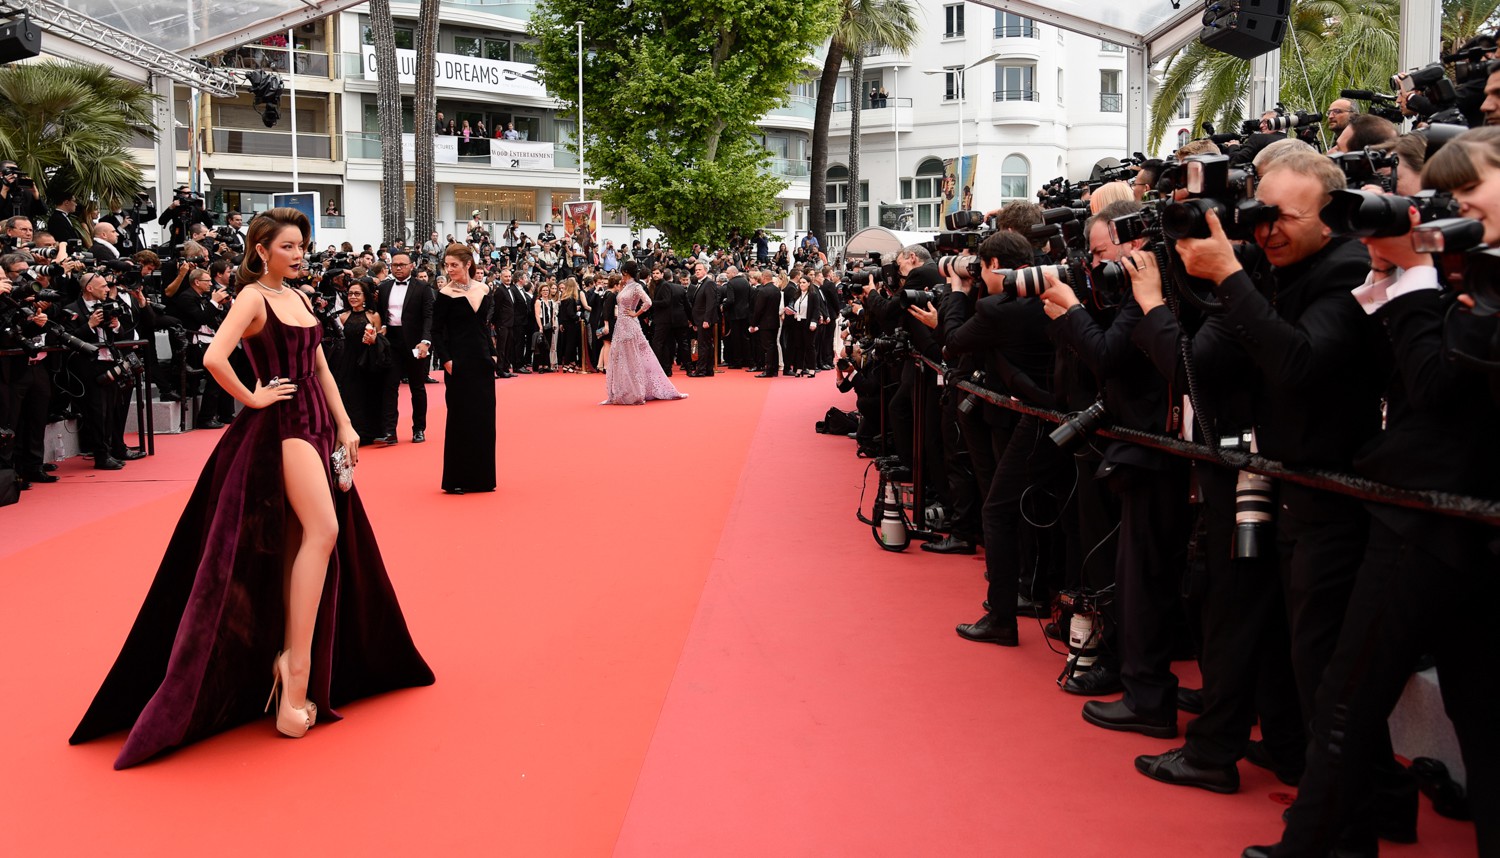 Lý Nhã Kỳ khẳng định: “Lựa chọn trang phục ở Cannes là cách nhận biết ngôi sao và khán giả vô danh” - Ảnh 2.